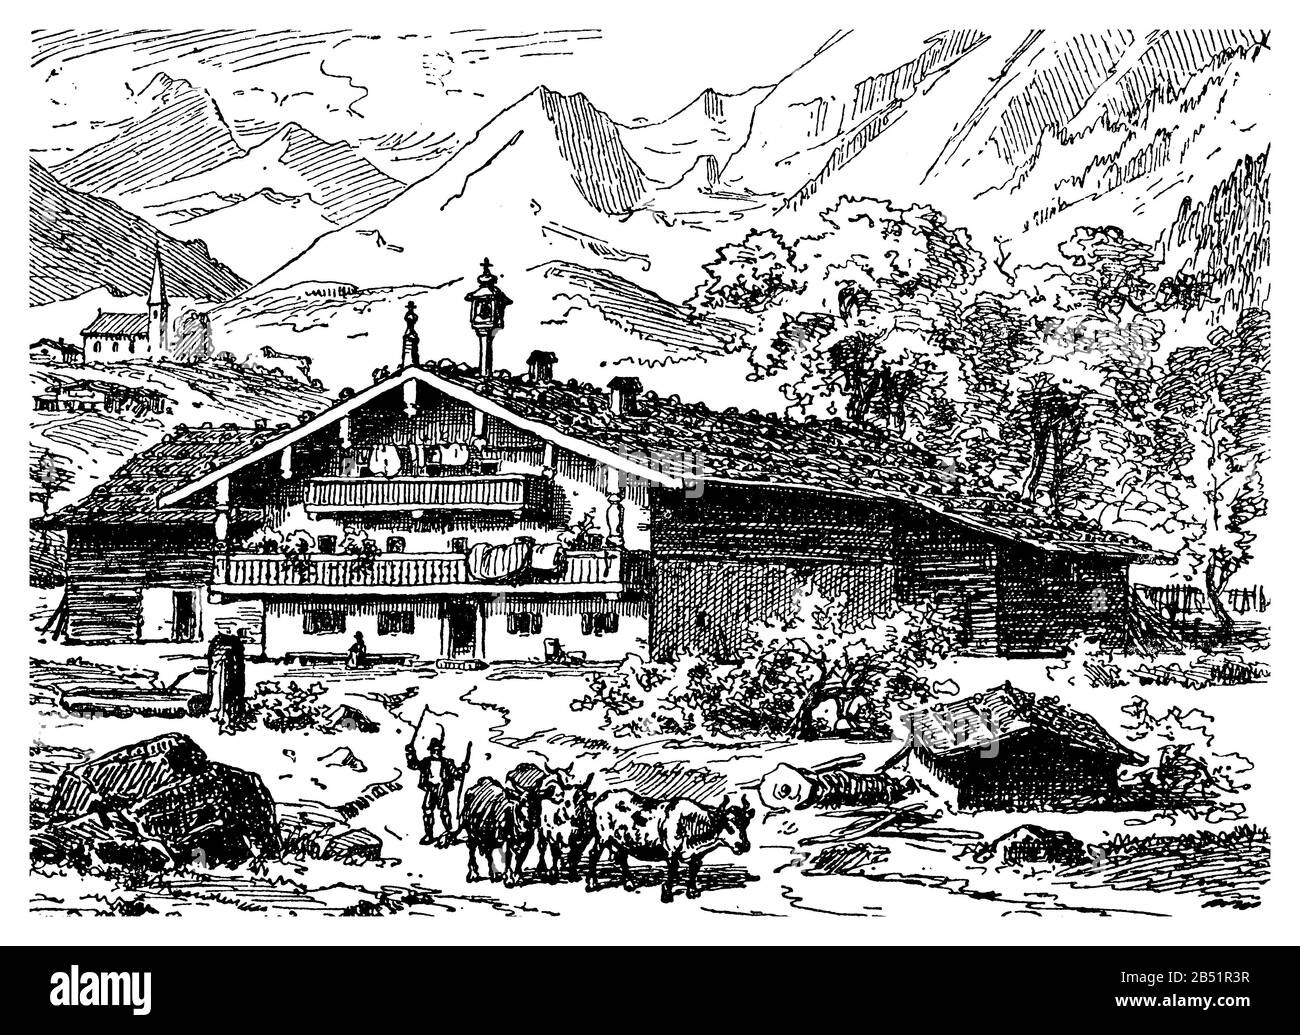 Autriche - le paysage de montagne Tyroler avec une ferme typique avec des balcons en bois sous le toit incliné Banque D'Images